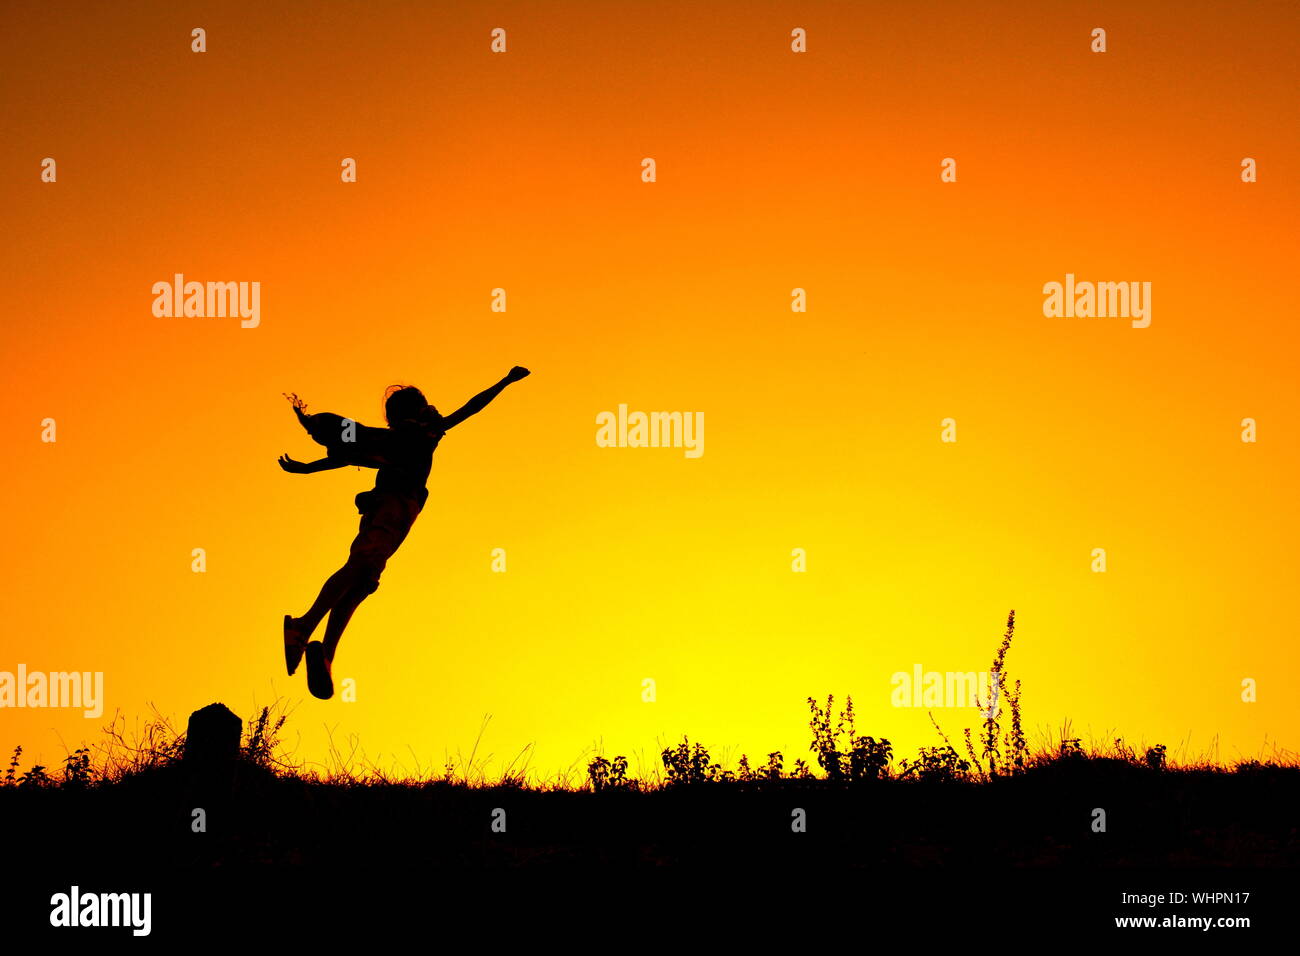 Silueta persona saltando en mitad del aire contra el cielo anaranjado Foto de stock